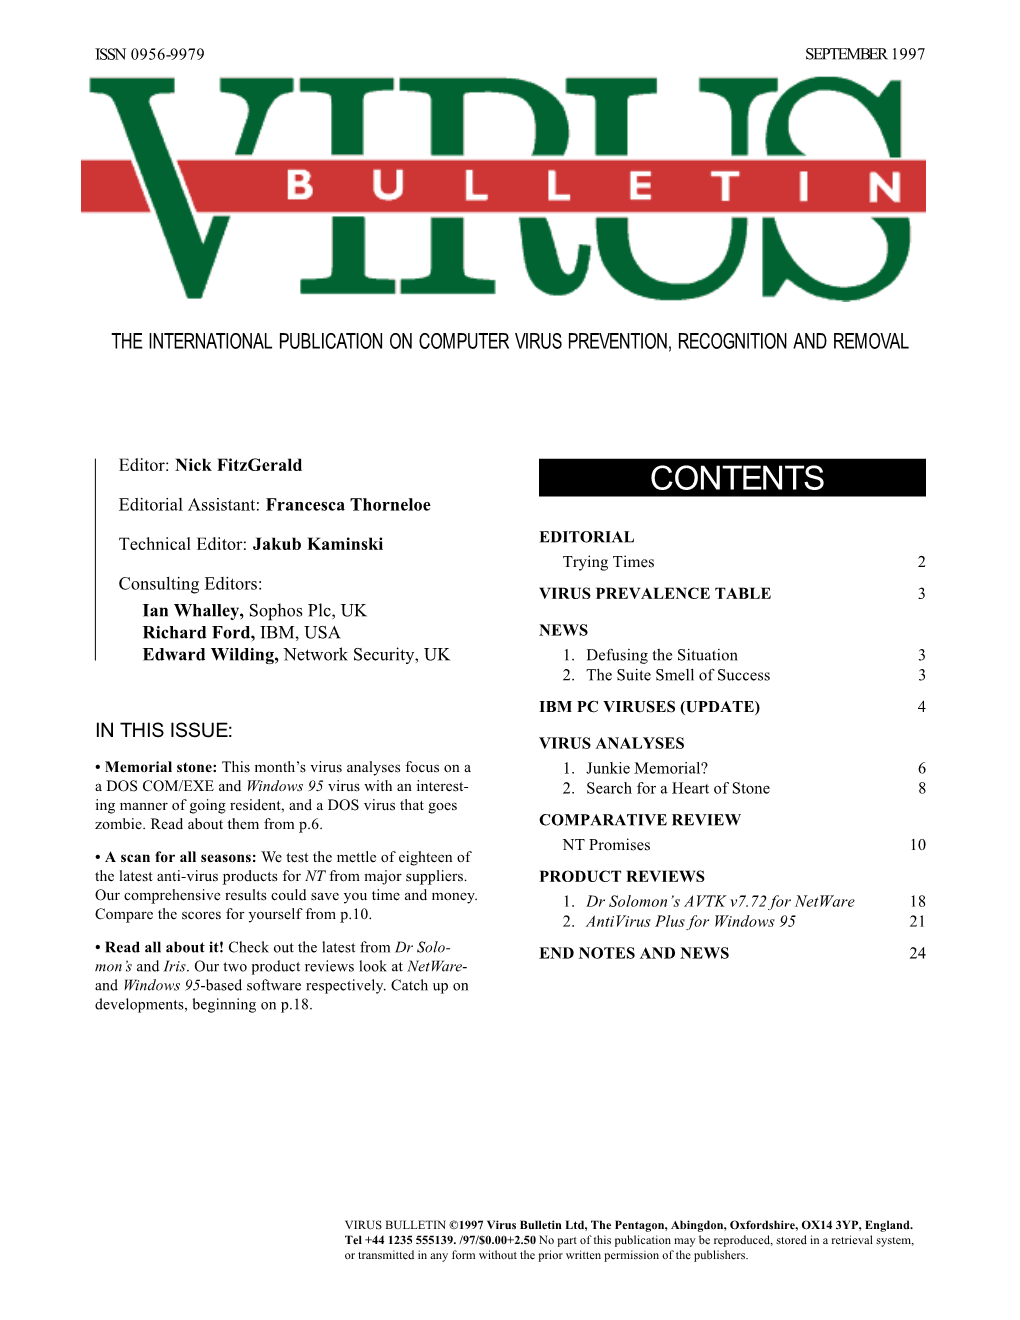 Virus Bulletin, September 1997